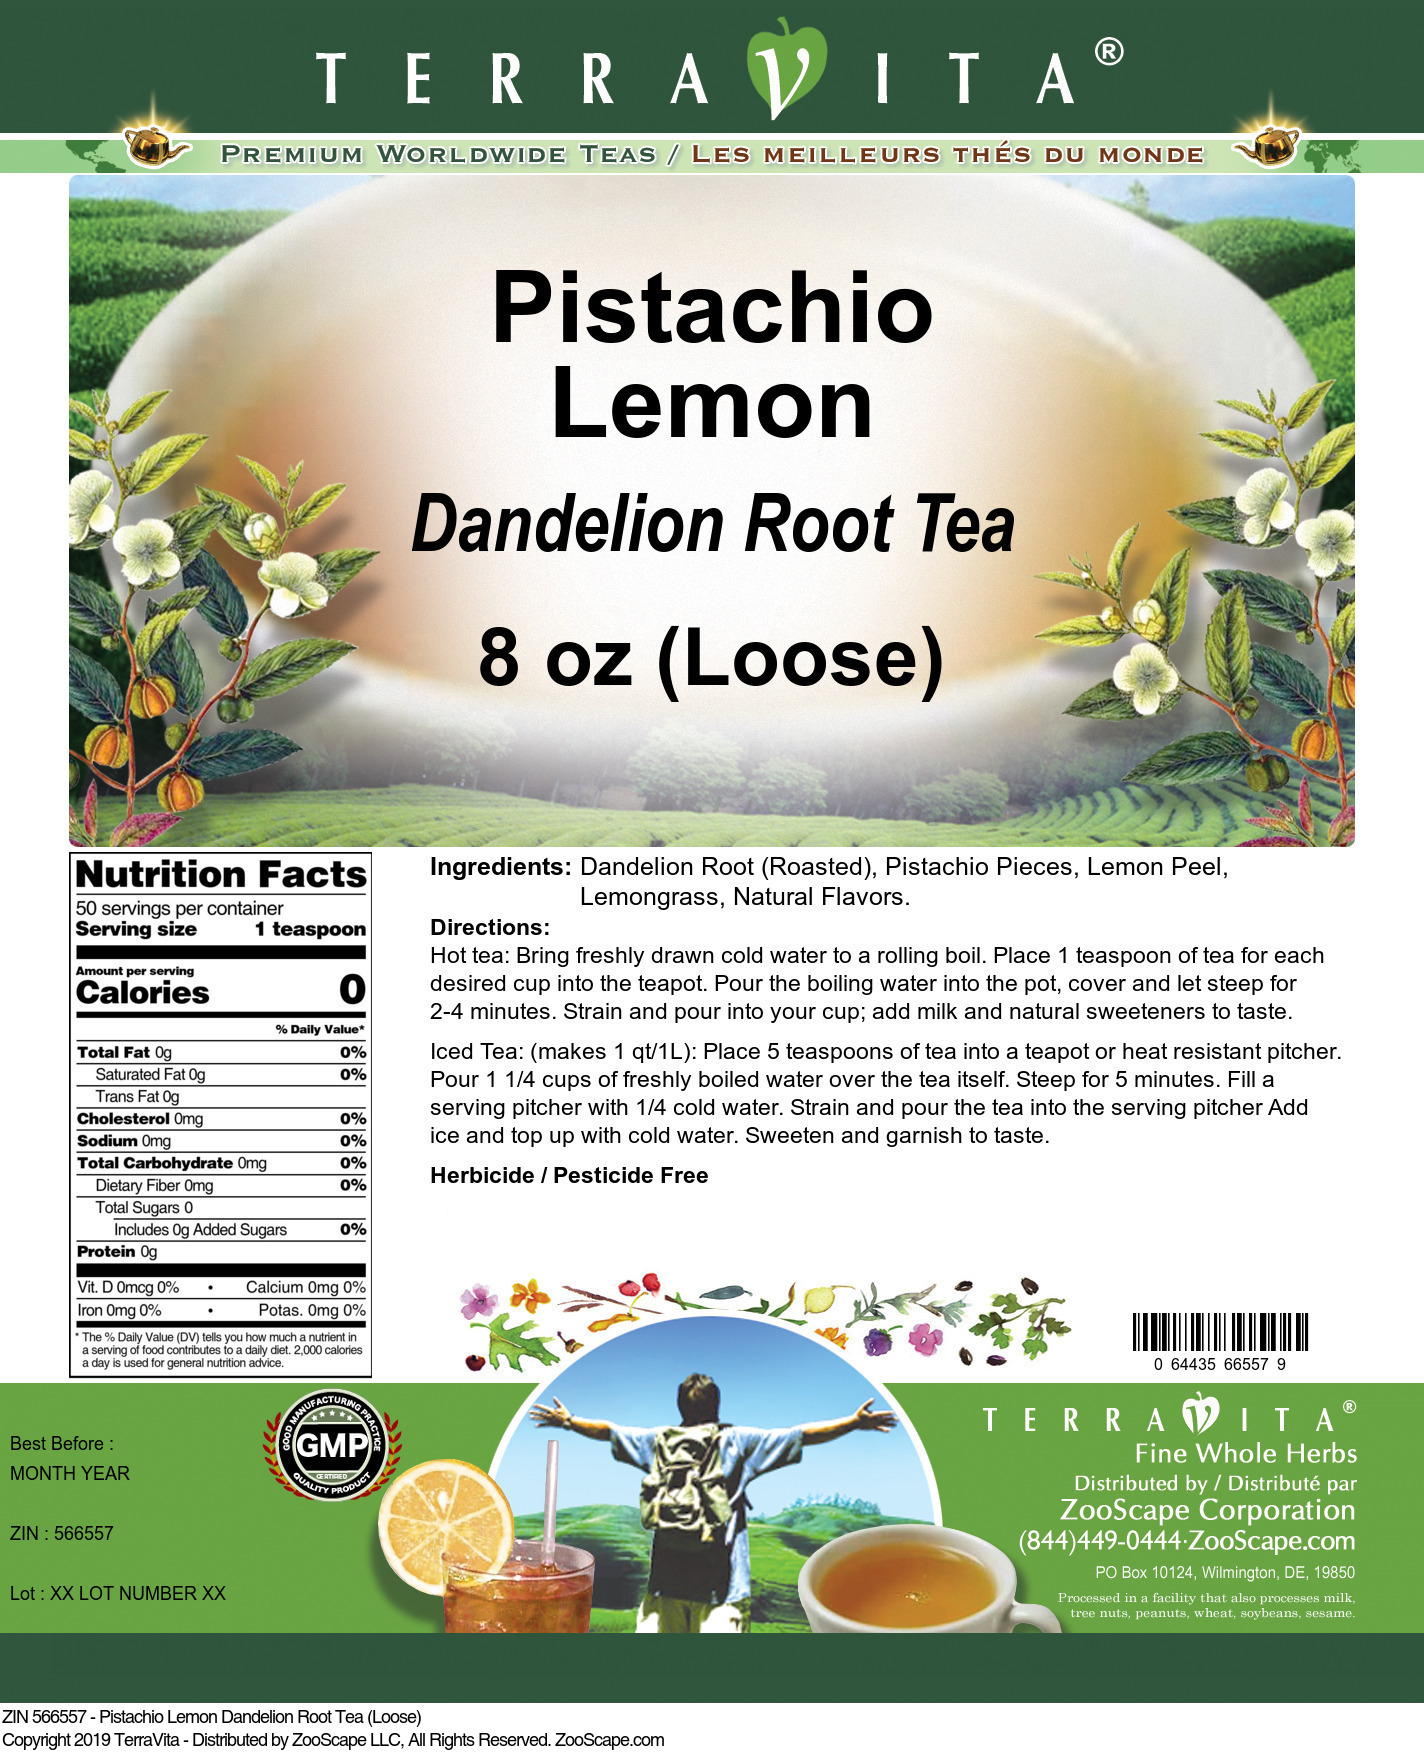 Pistachio Lemon Dandelion Root Tea (Loose) - Label